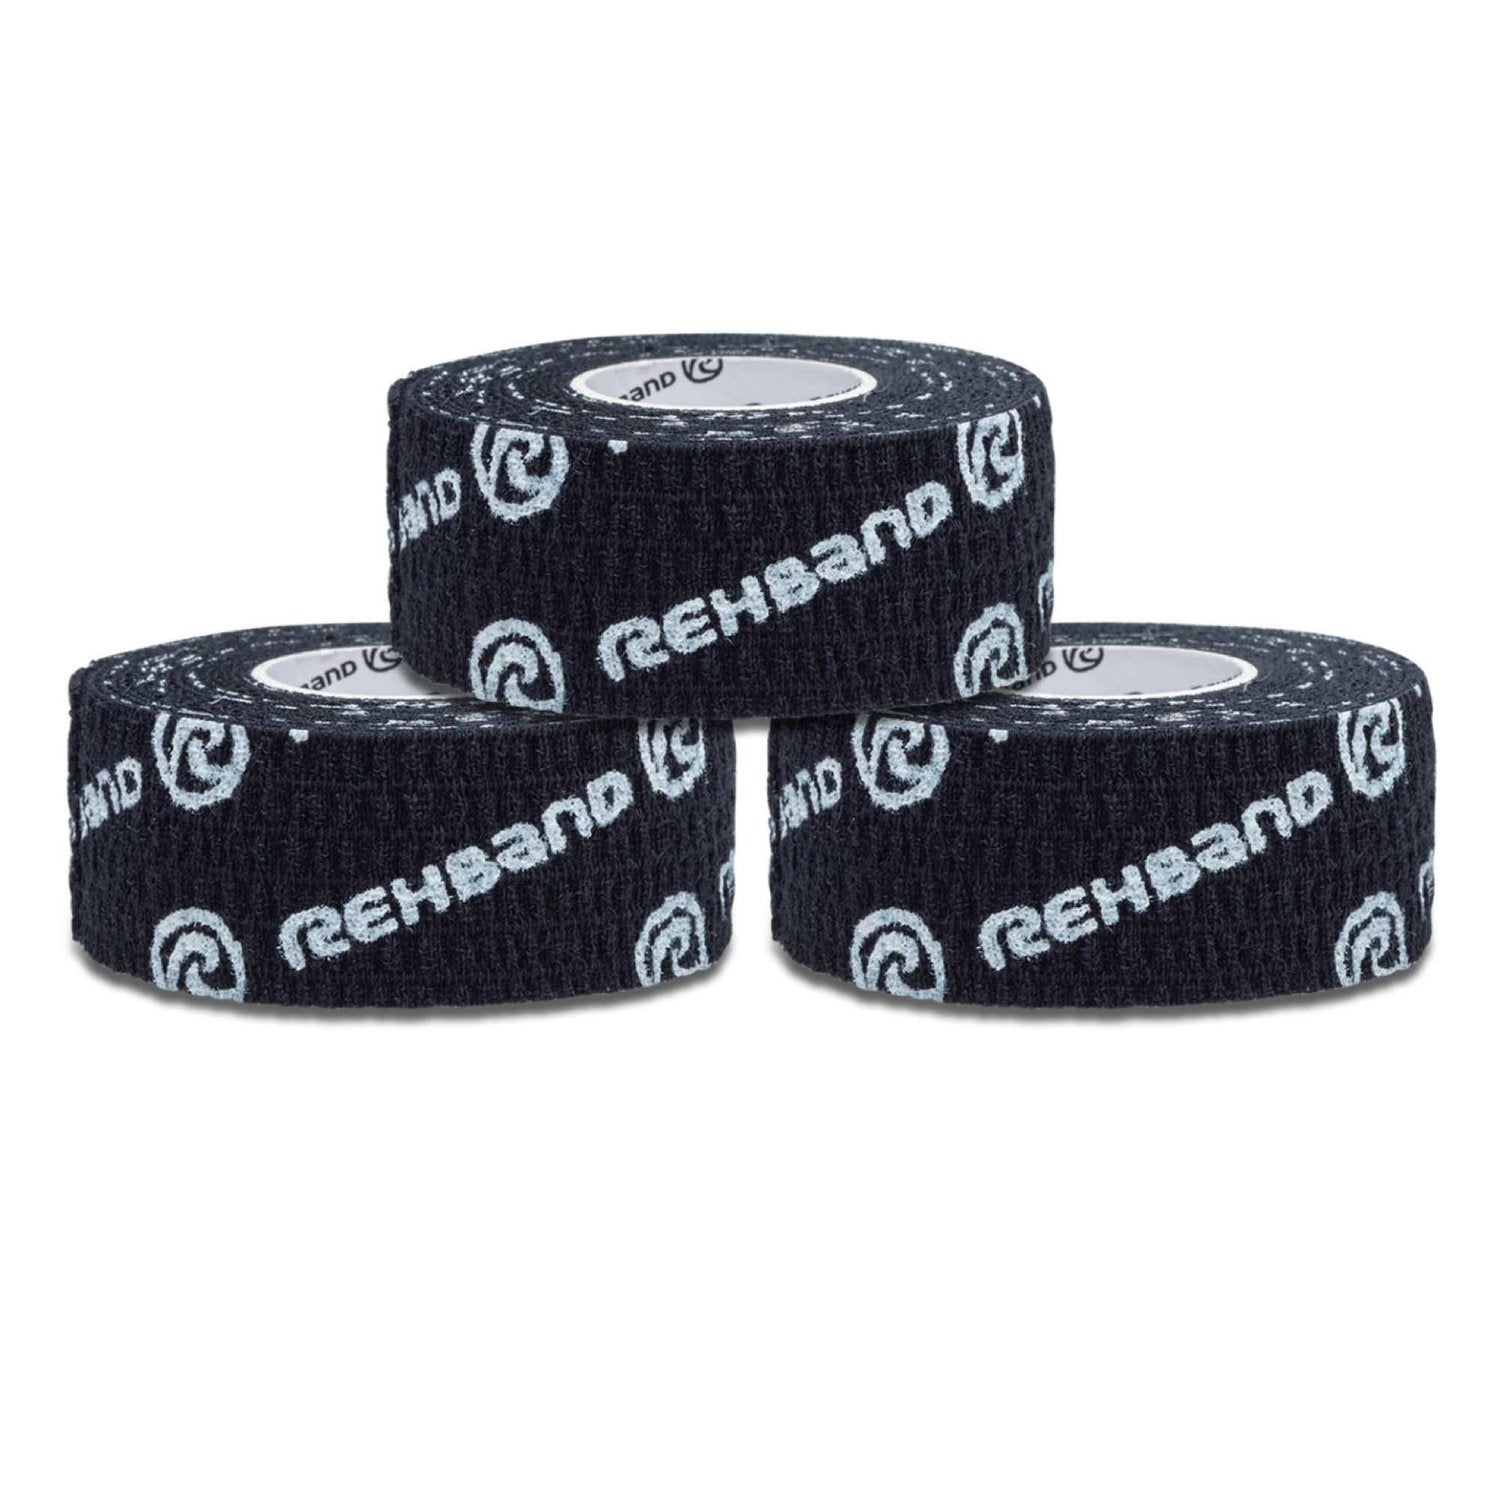 Rehband RX Athletic Power-Wrap 25 mm x 3 Rollen (Gewichtheberband) Schwarz kaufen bei HighPowered.ch